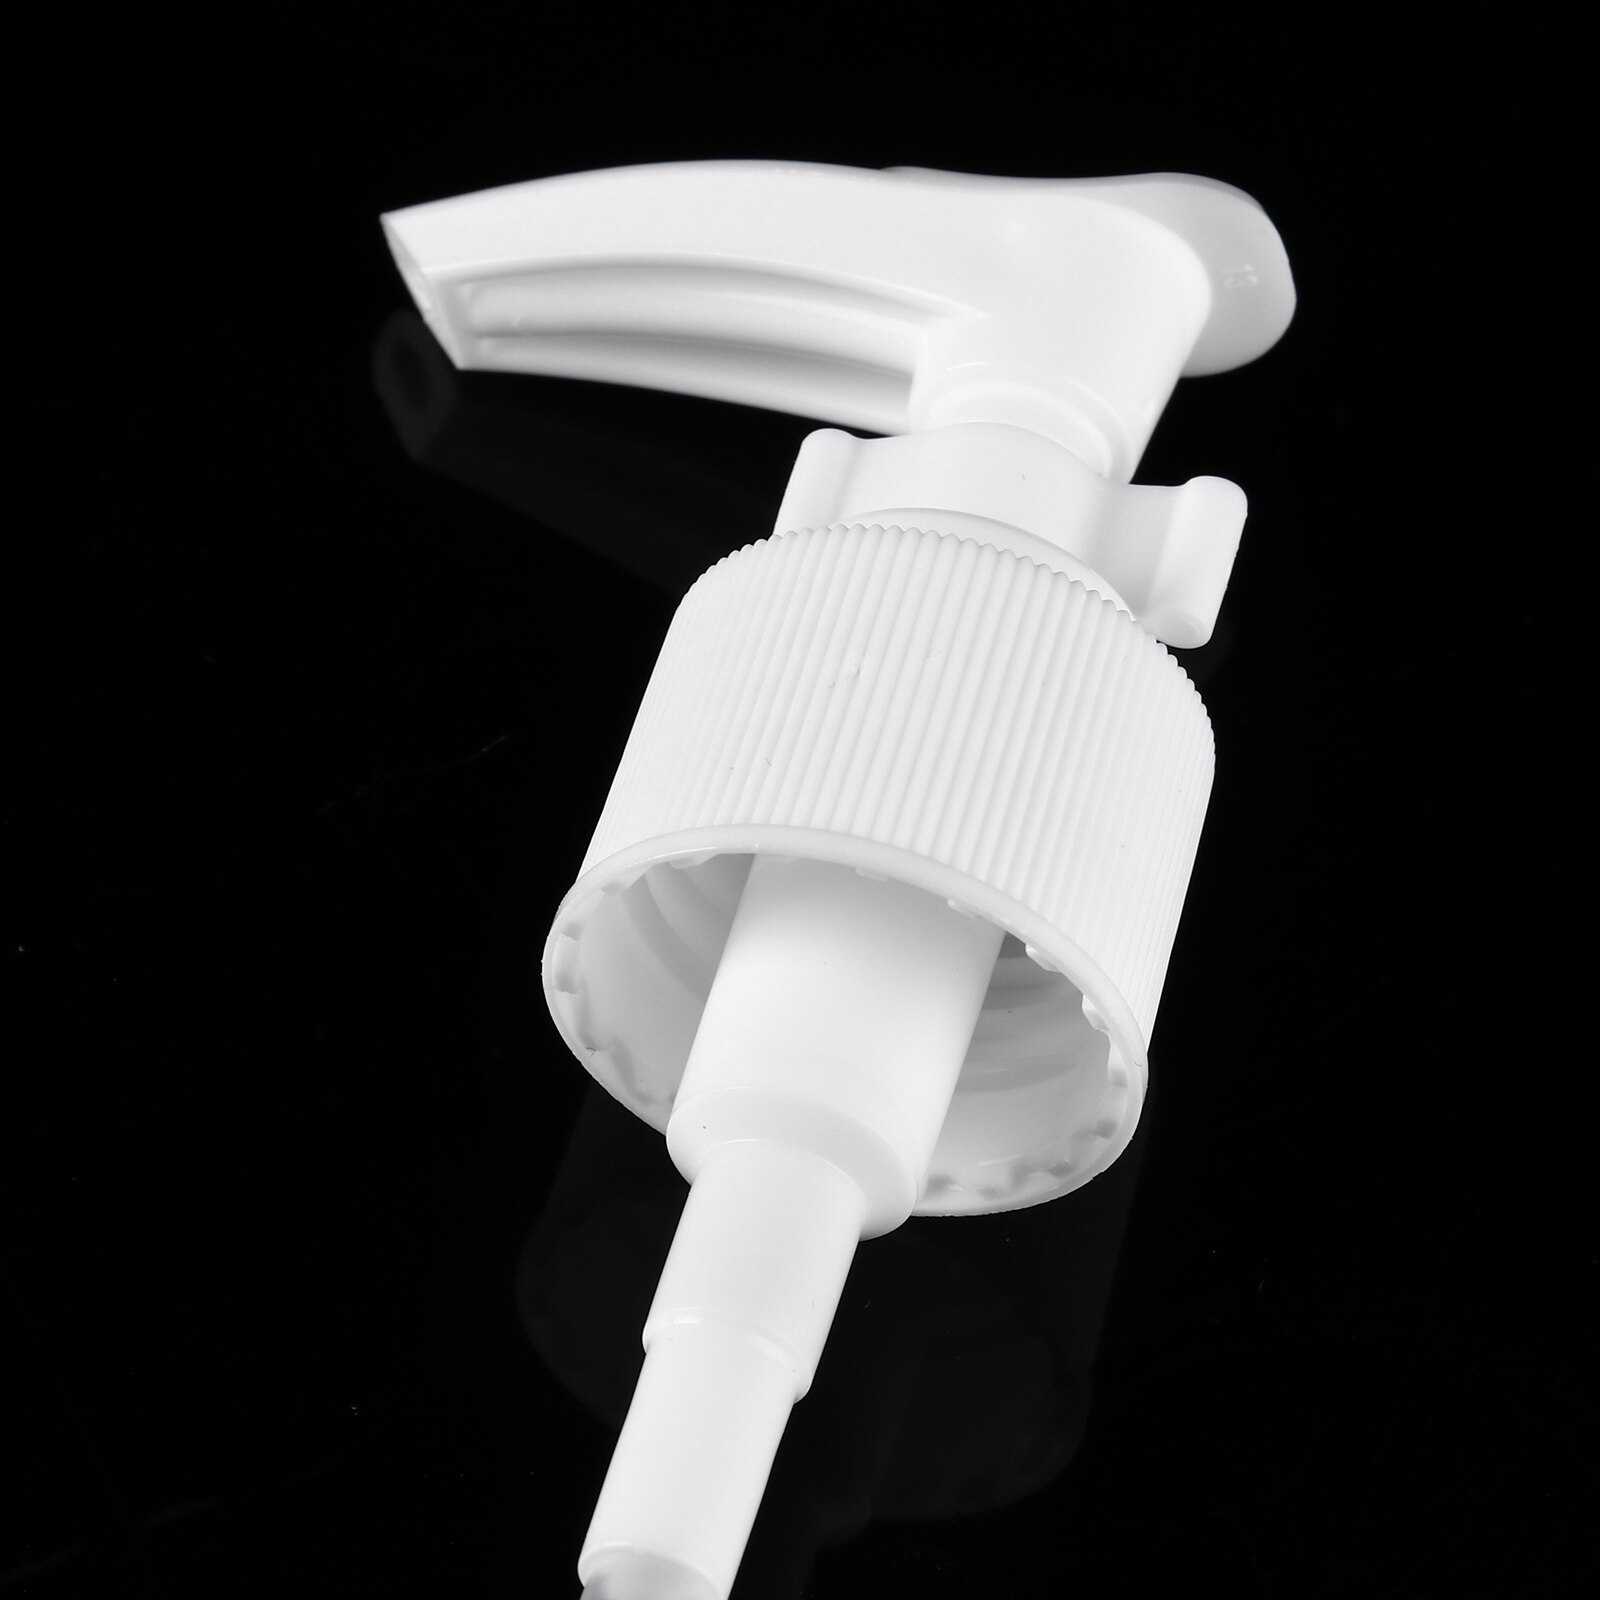 5Pcs 20/24Mm Plastic Lotion Dispenser Reizen Pomp Flessen Pompen Vervanging Met Buis Voor Shampoo Zeep Lotion fles Accessoires